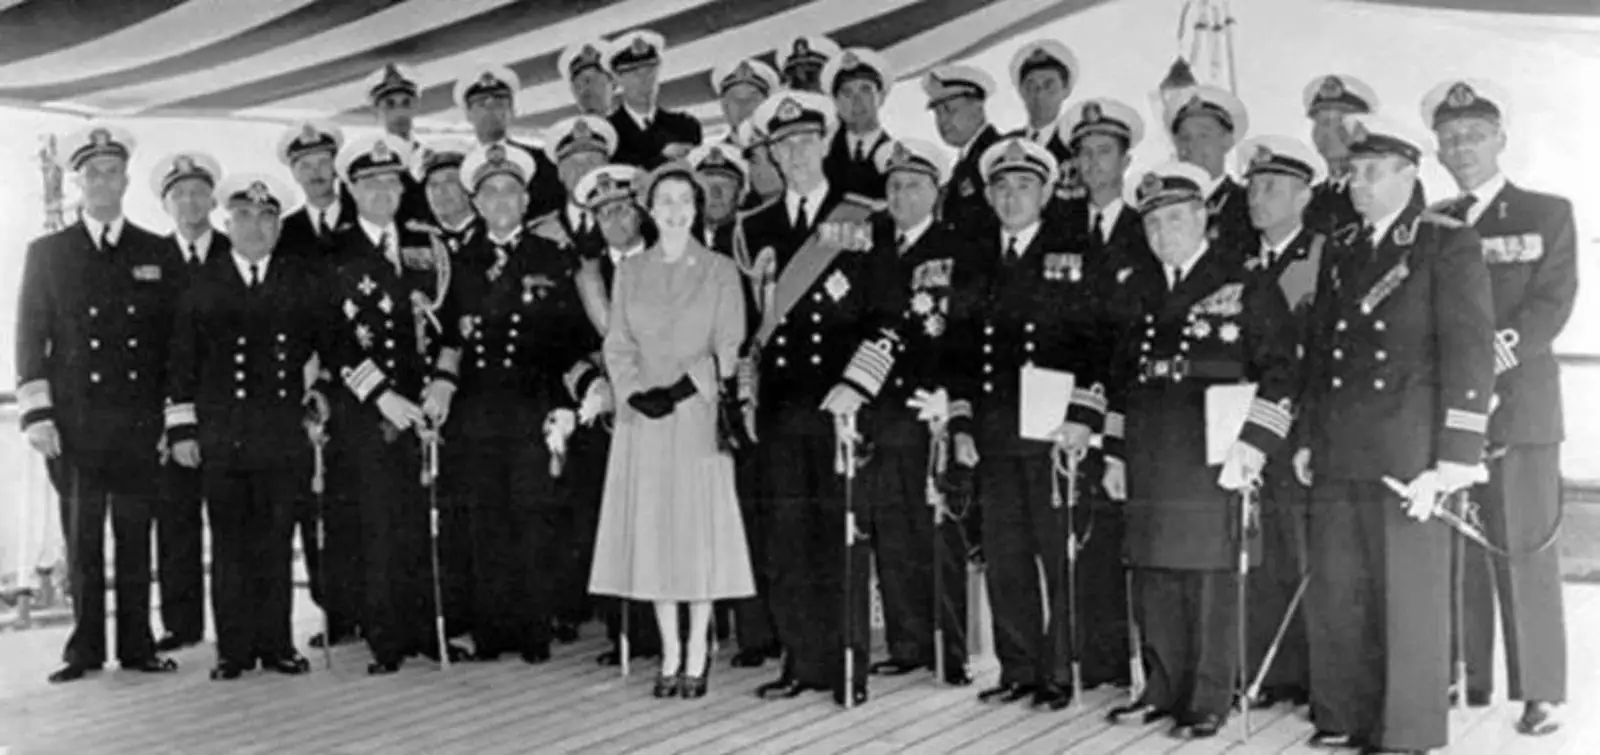 Фото адмиралов с королевской четой на память. О.И. Рудаков крайний справа. 